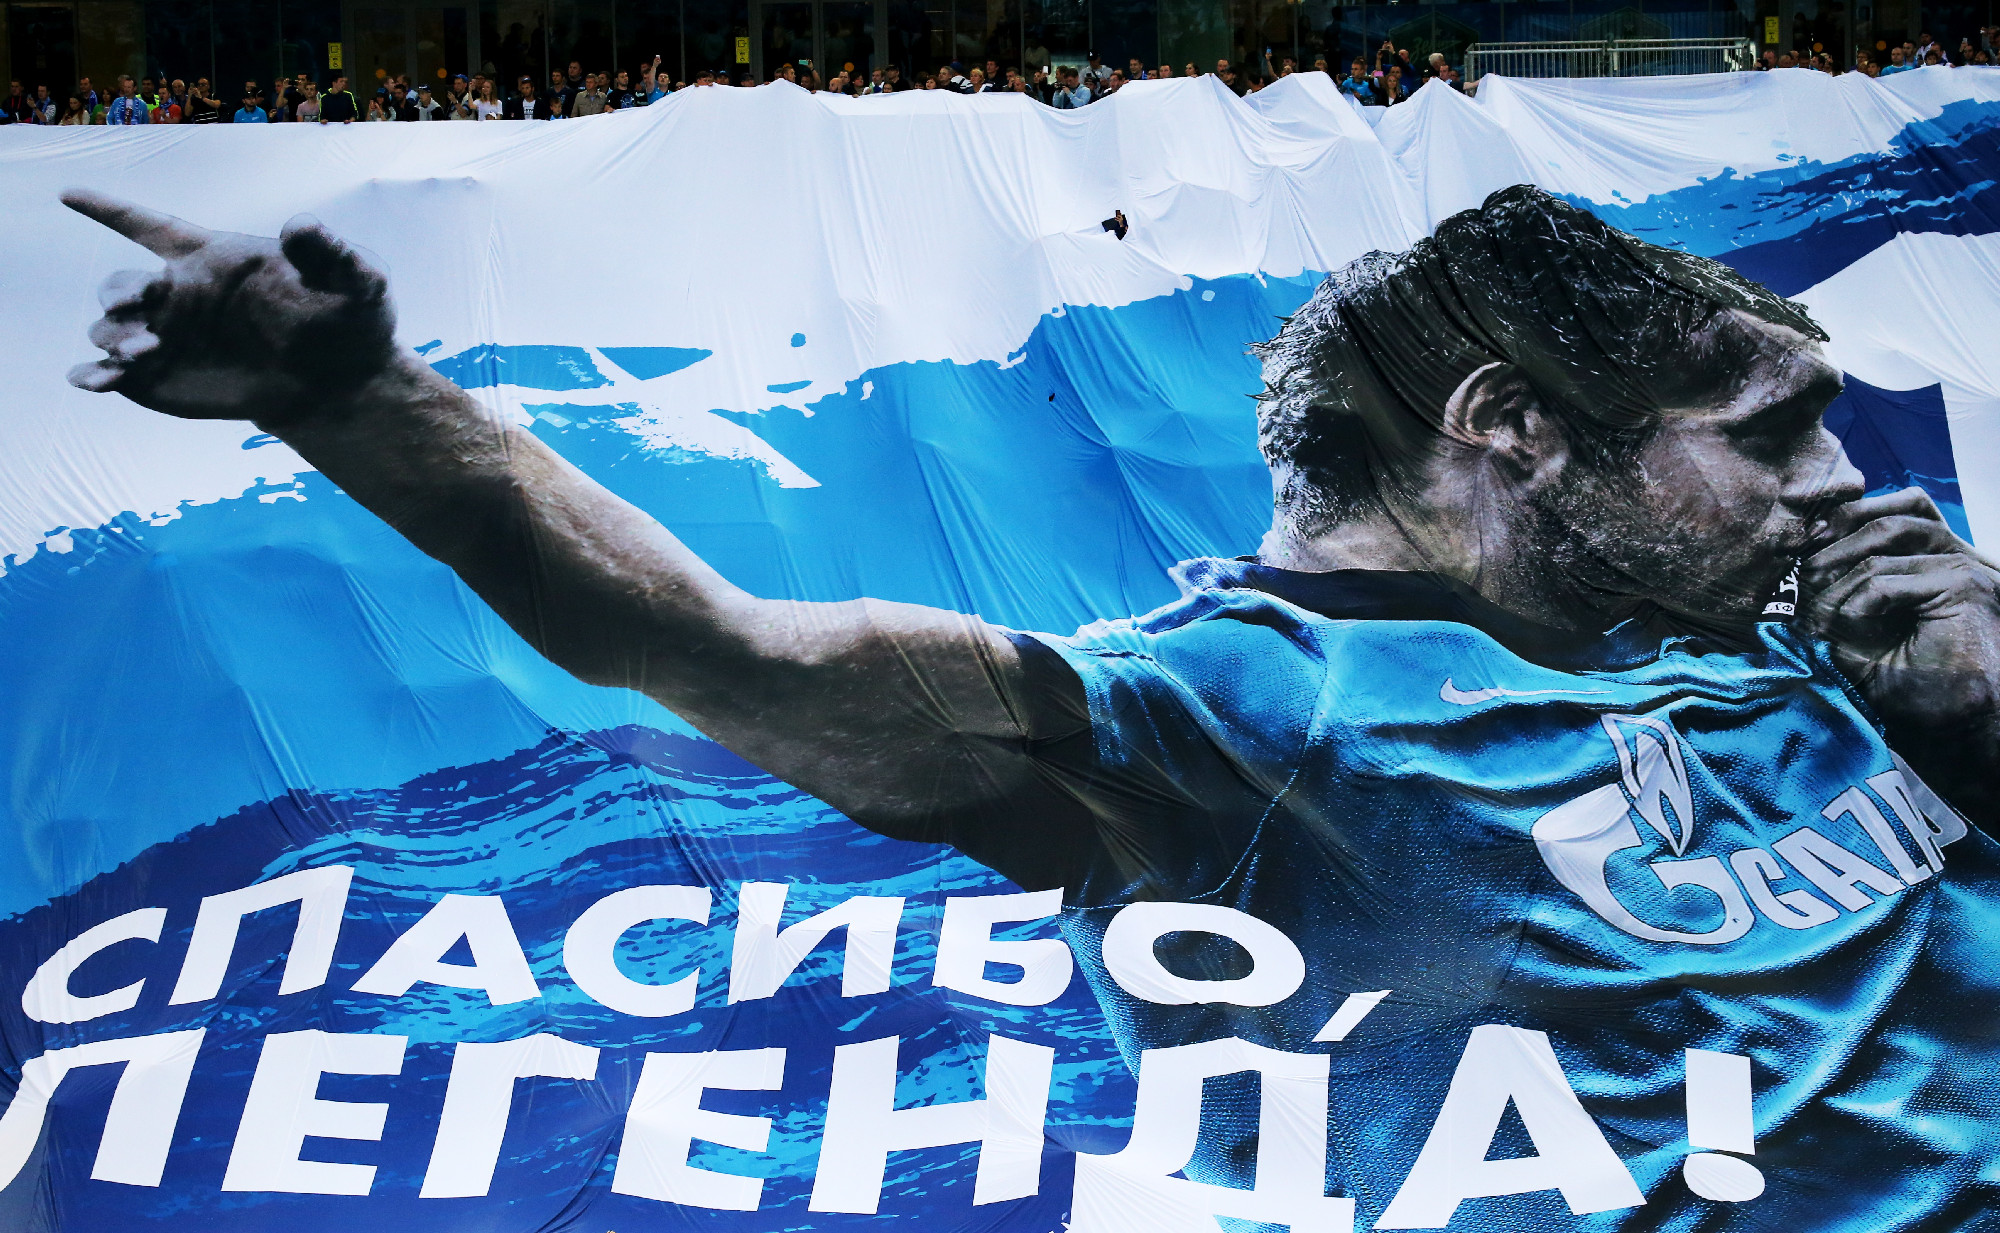 Часть баннеров была посвящена Александру Кержакову, который перед матчем попрощался с большим футболом.